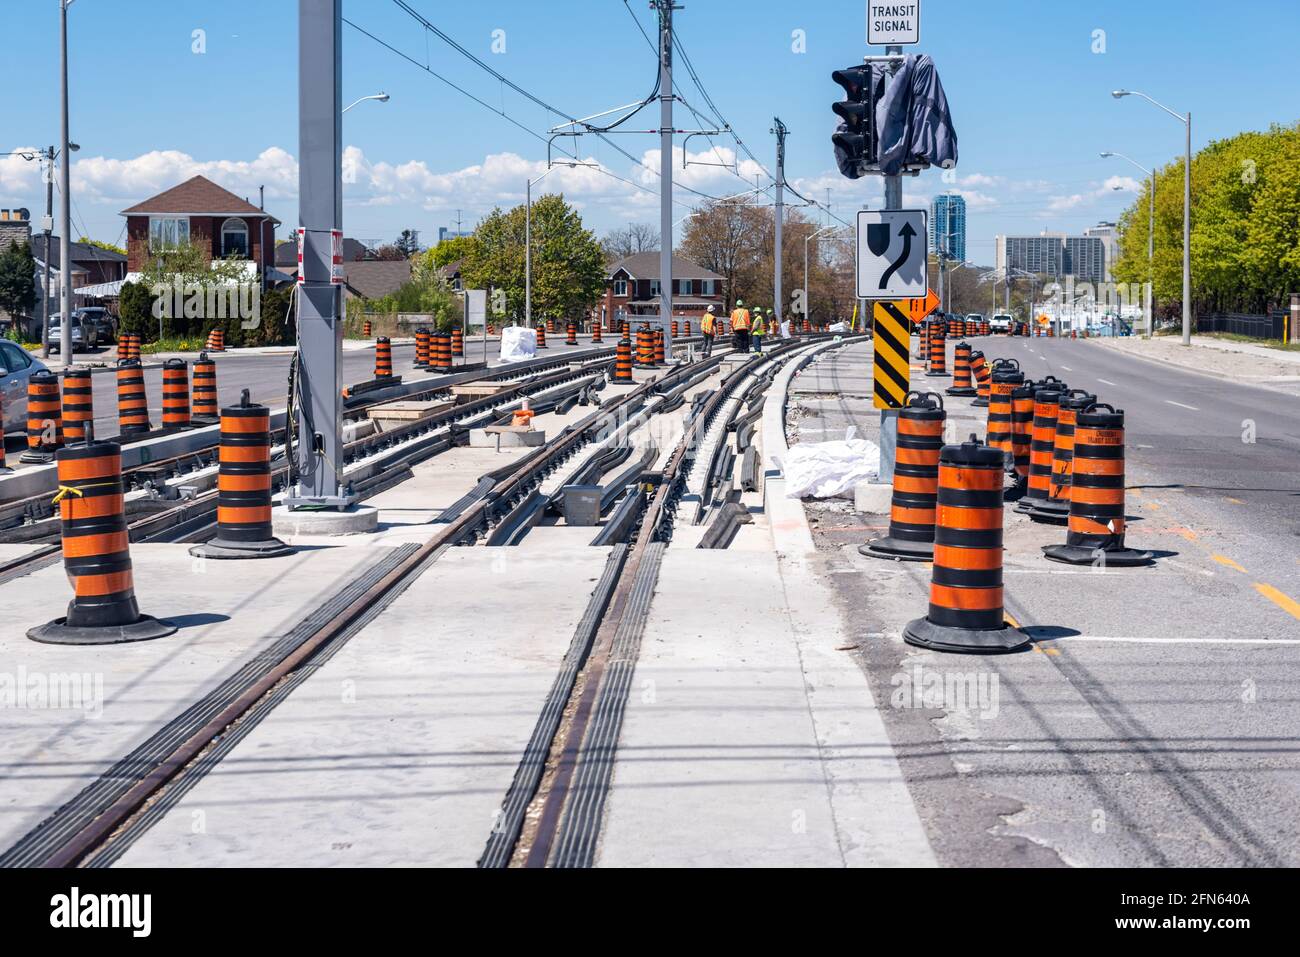 Costruzione dell'Eglinton Crosstown, un progetto guidato da Metrolinx a Toronto, Canada. Incrocio tra Victoria Park Avenue ed Eglinton Avenue Foto Stock